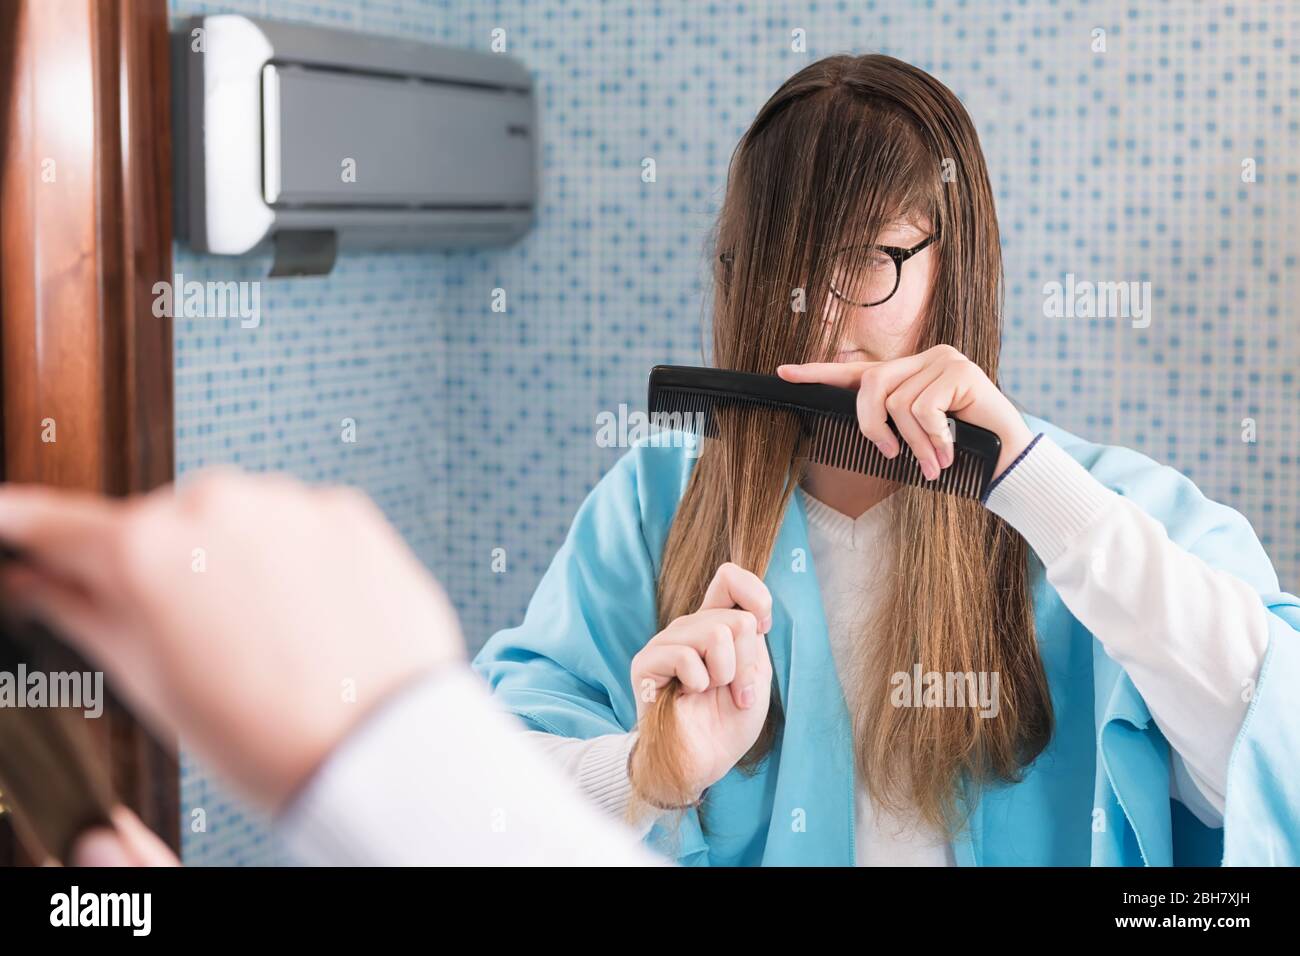 Ein schönes junges Mädchen hält einen Kamm, um ihr Haar während der Lockdown von Coronavirus schneiden, Blick in Spiegel. DIY Haarschnitt während der Epidemie o Stockfoto